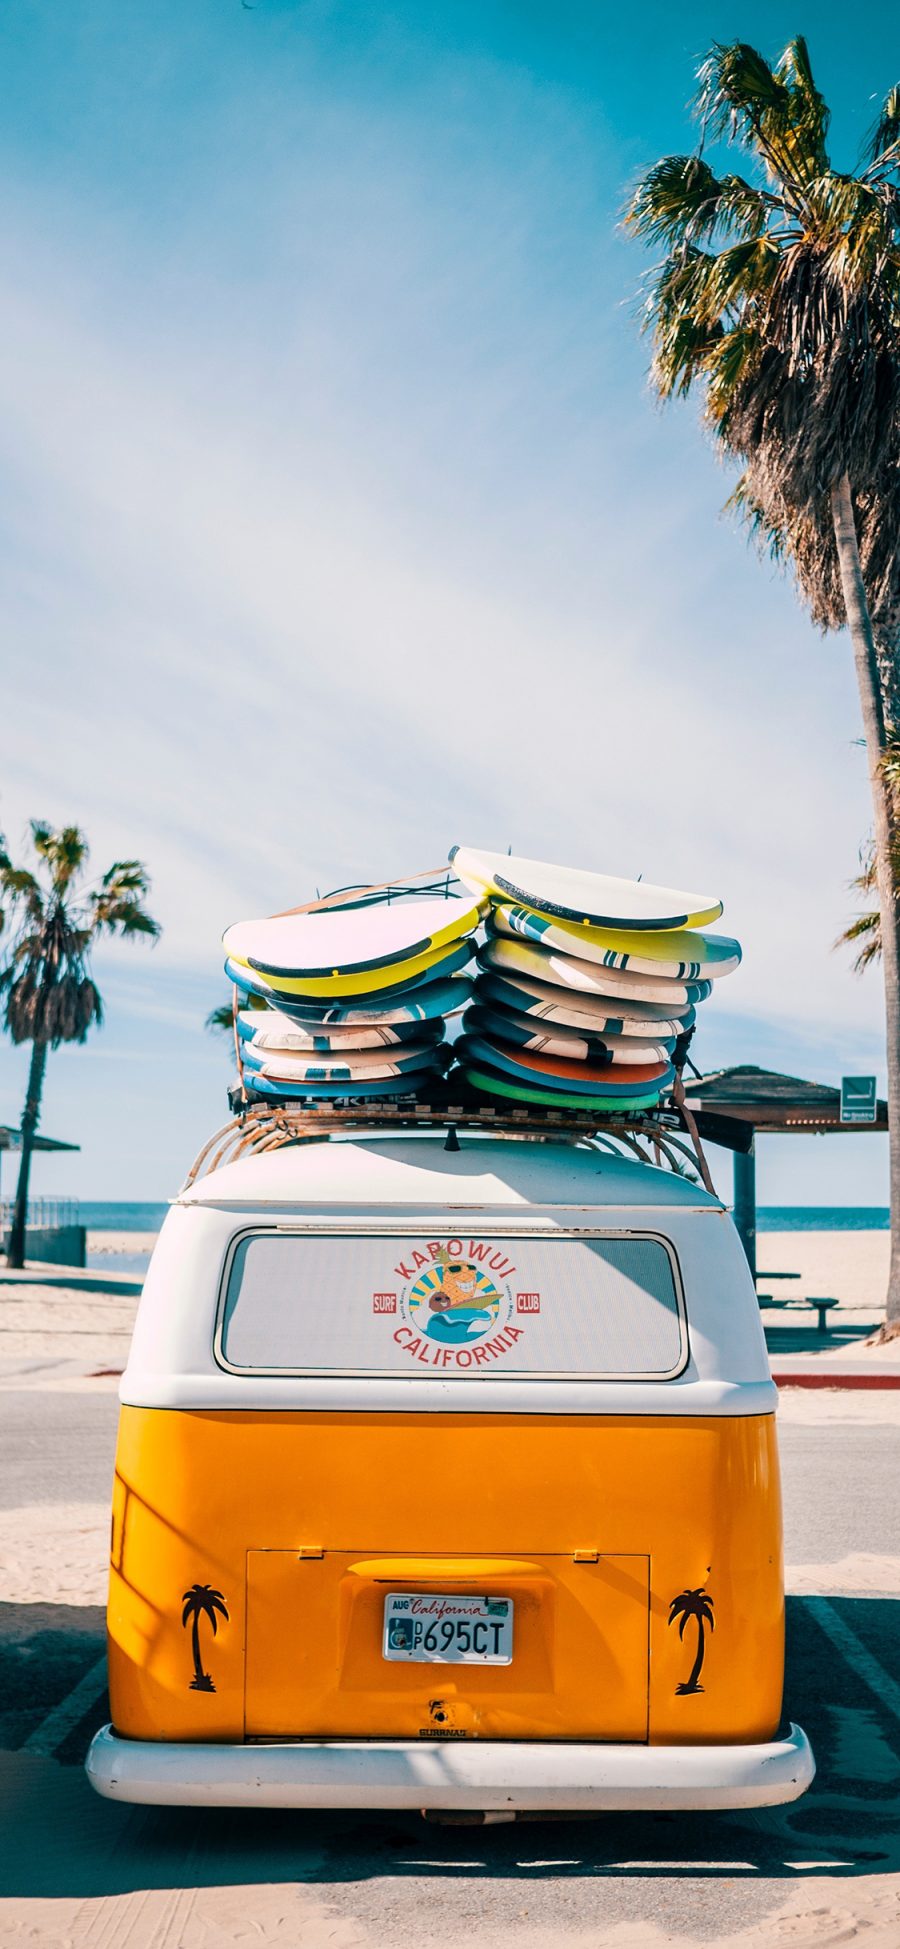 [2436×1125]冲浪板 面包车 旅行 海边 度假 苹果手机壁纸图片